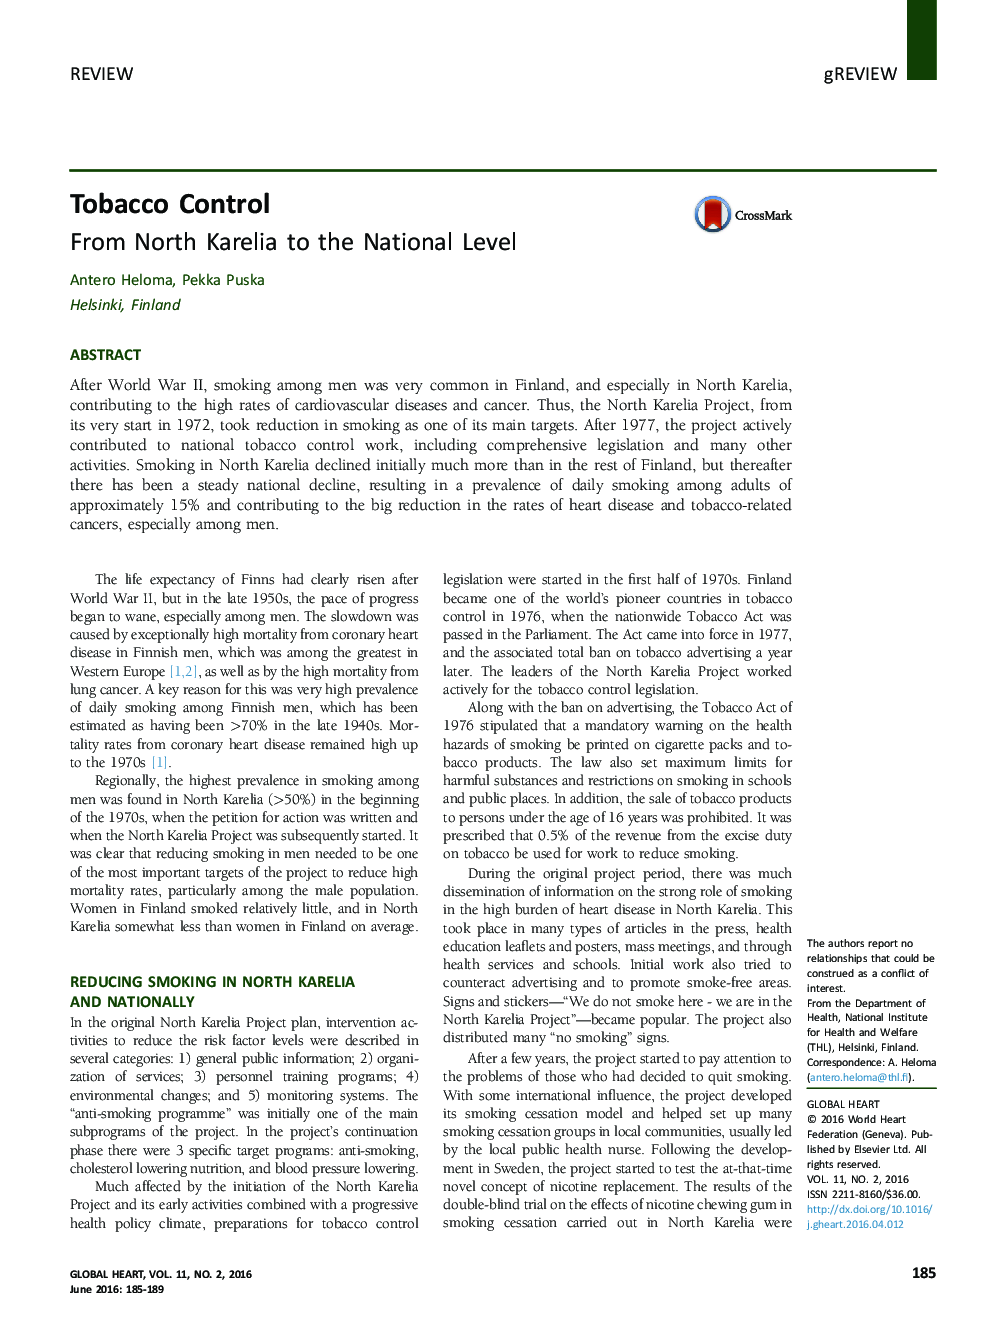 کنترل دخانیات: از شمال کارلیا تا سطح ملی 